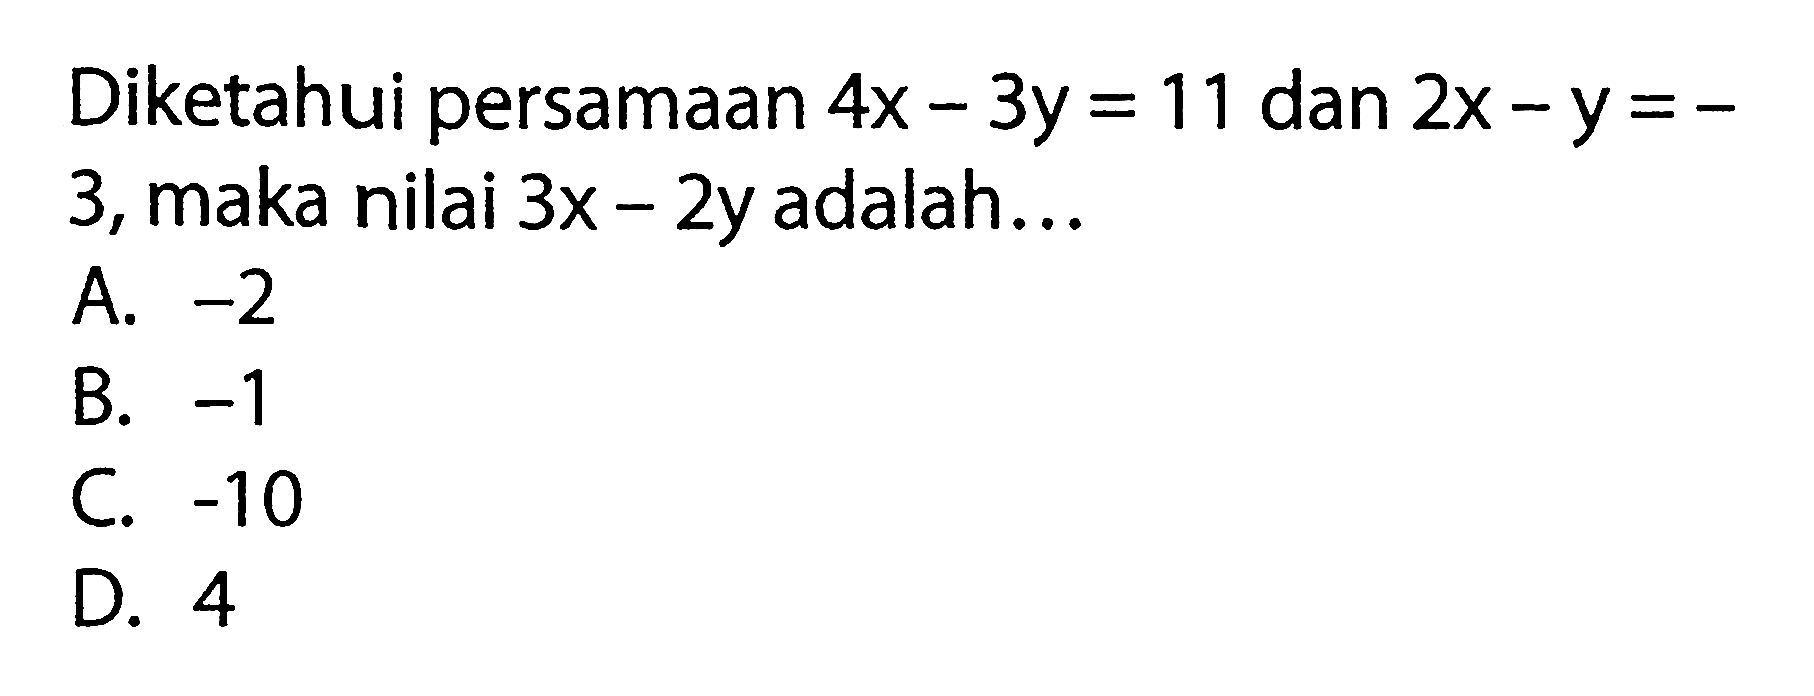 Diketahui persamaan 4x - 3y = 11 dan 2x - y = -3, maka nilai 3x - 2y adalah...